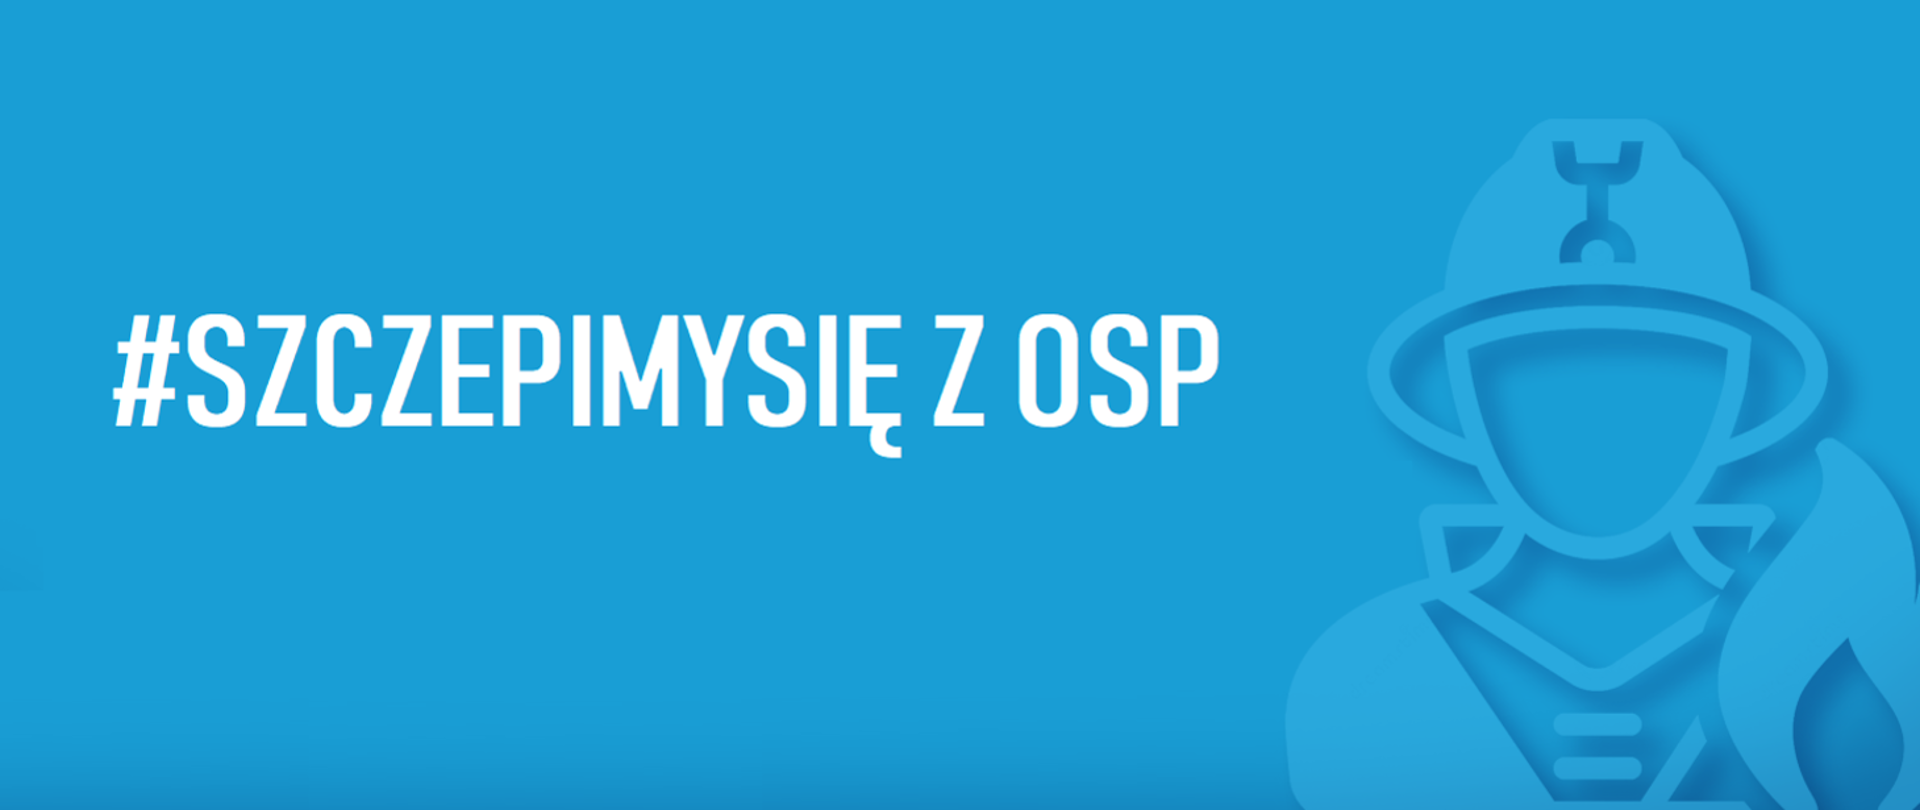 Logo akcji #SzczepimySie z OSP. Niebieskie tło, biały napis: #SzczepimySie z OSP